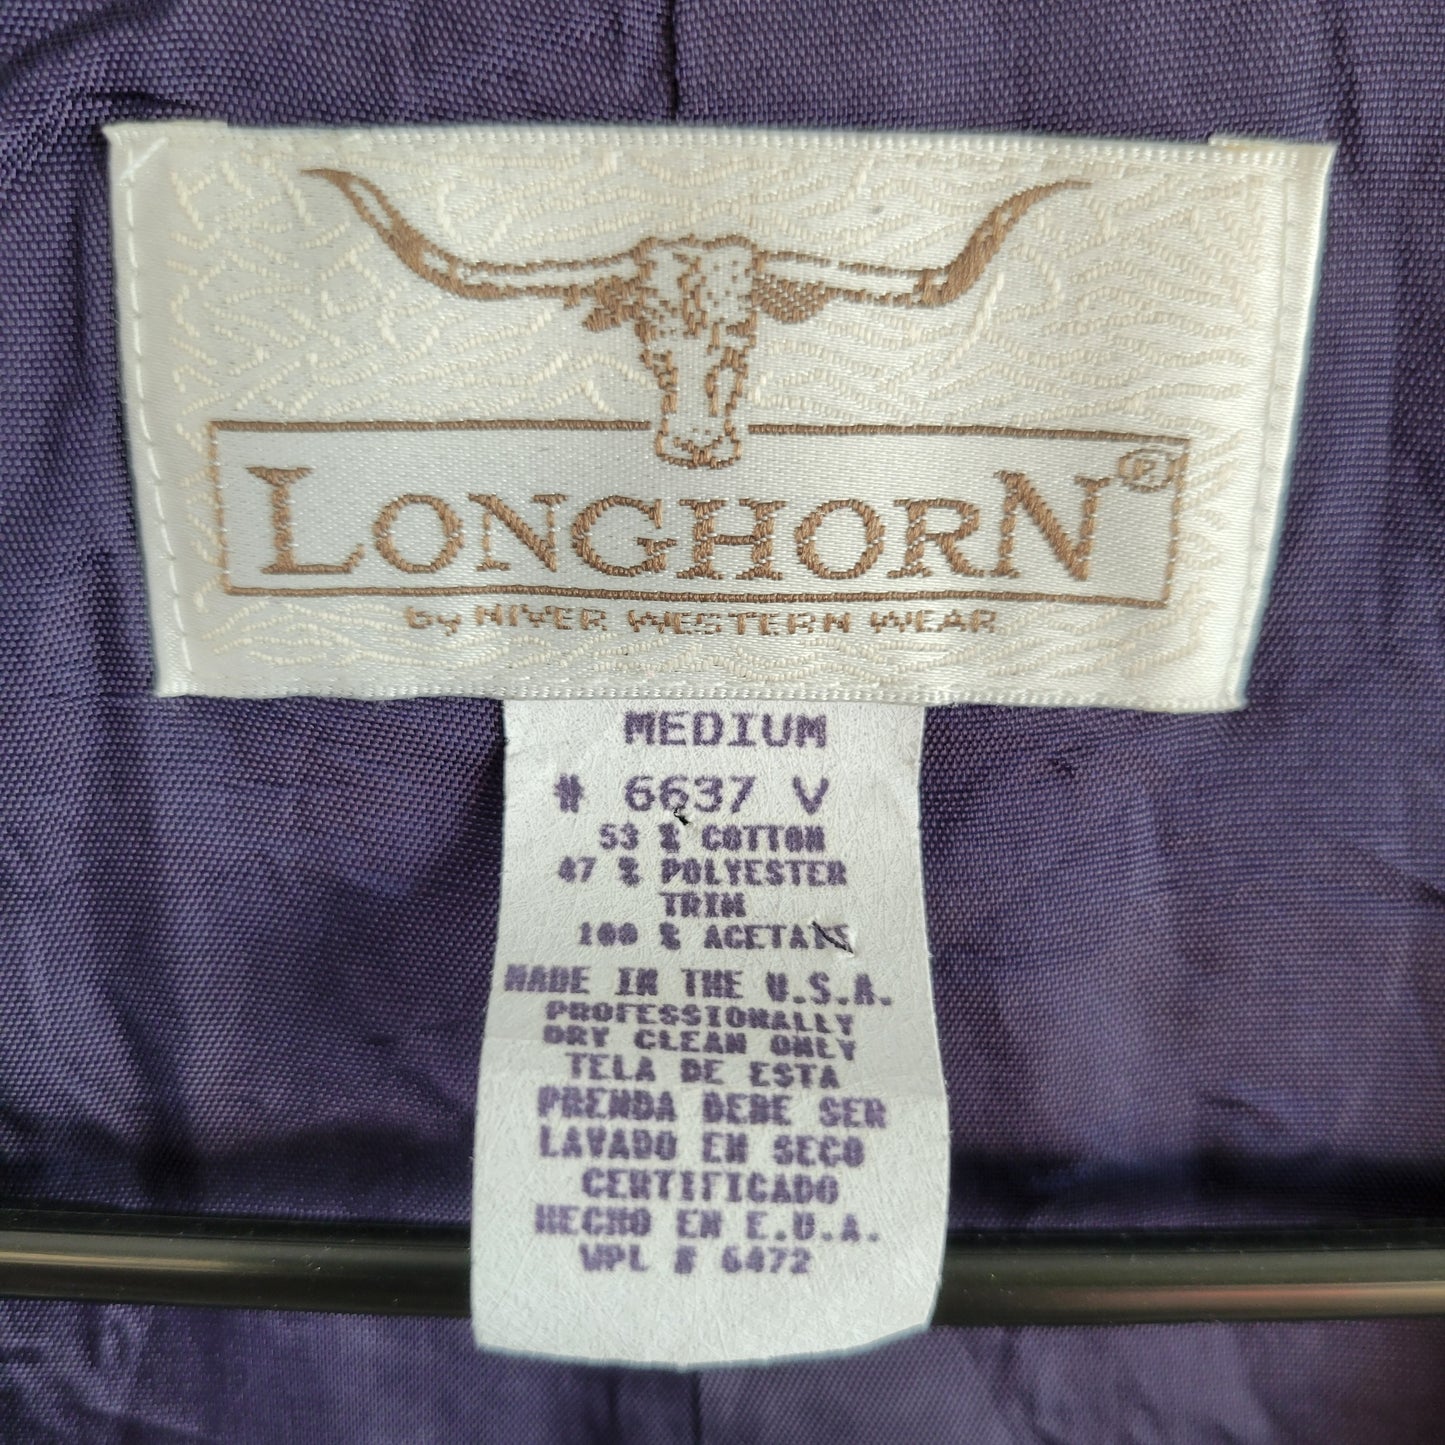 Longhorn by Niver Western Wear Vintage Tapestry Vest - medium